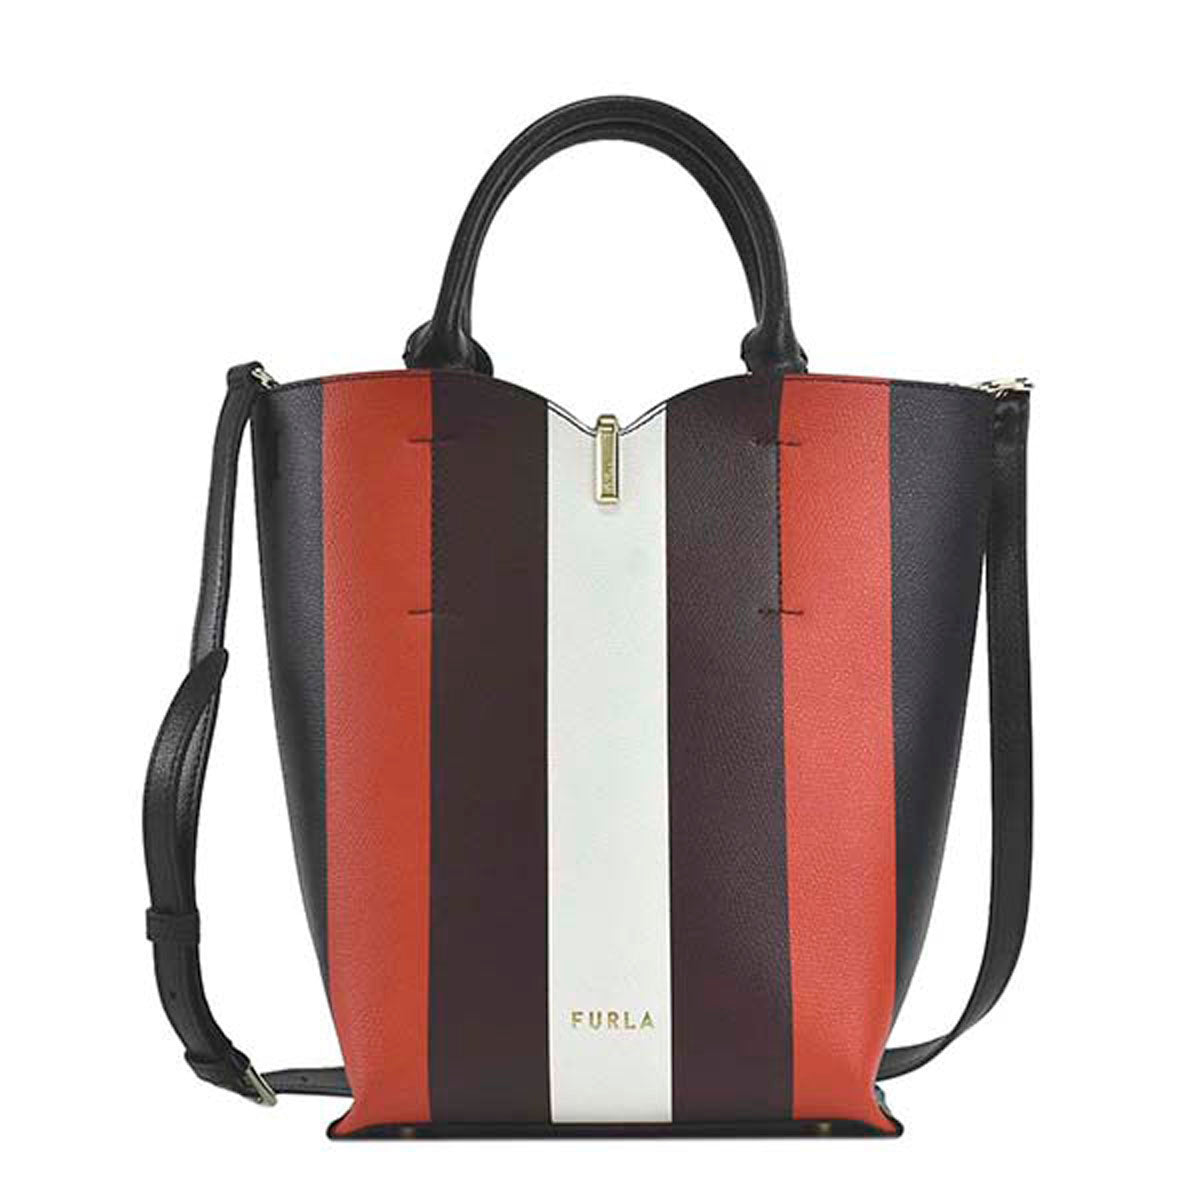 Furla FURLA bag handbag shoulder bag mini tote BZZ2 1056576 RIBBON S B